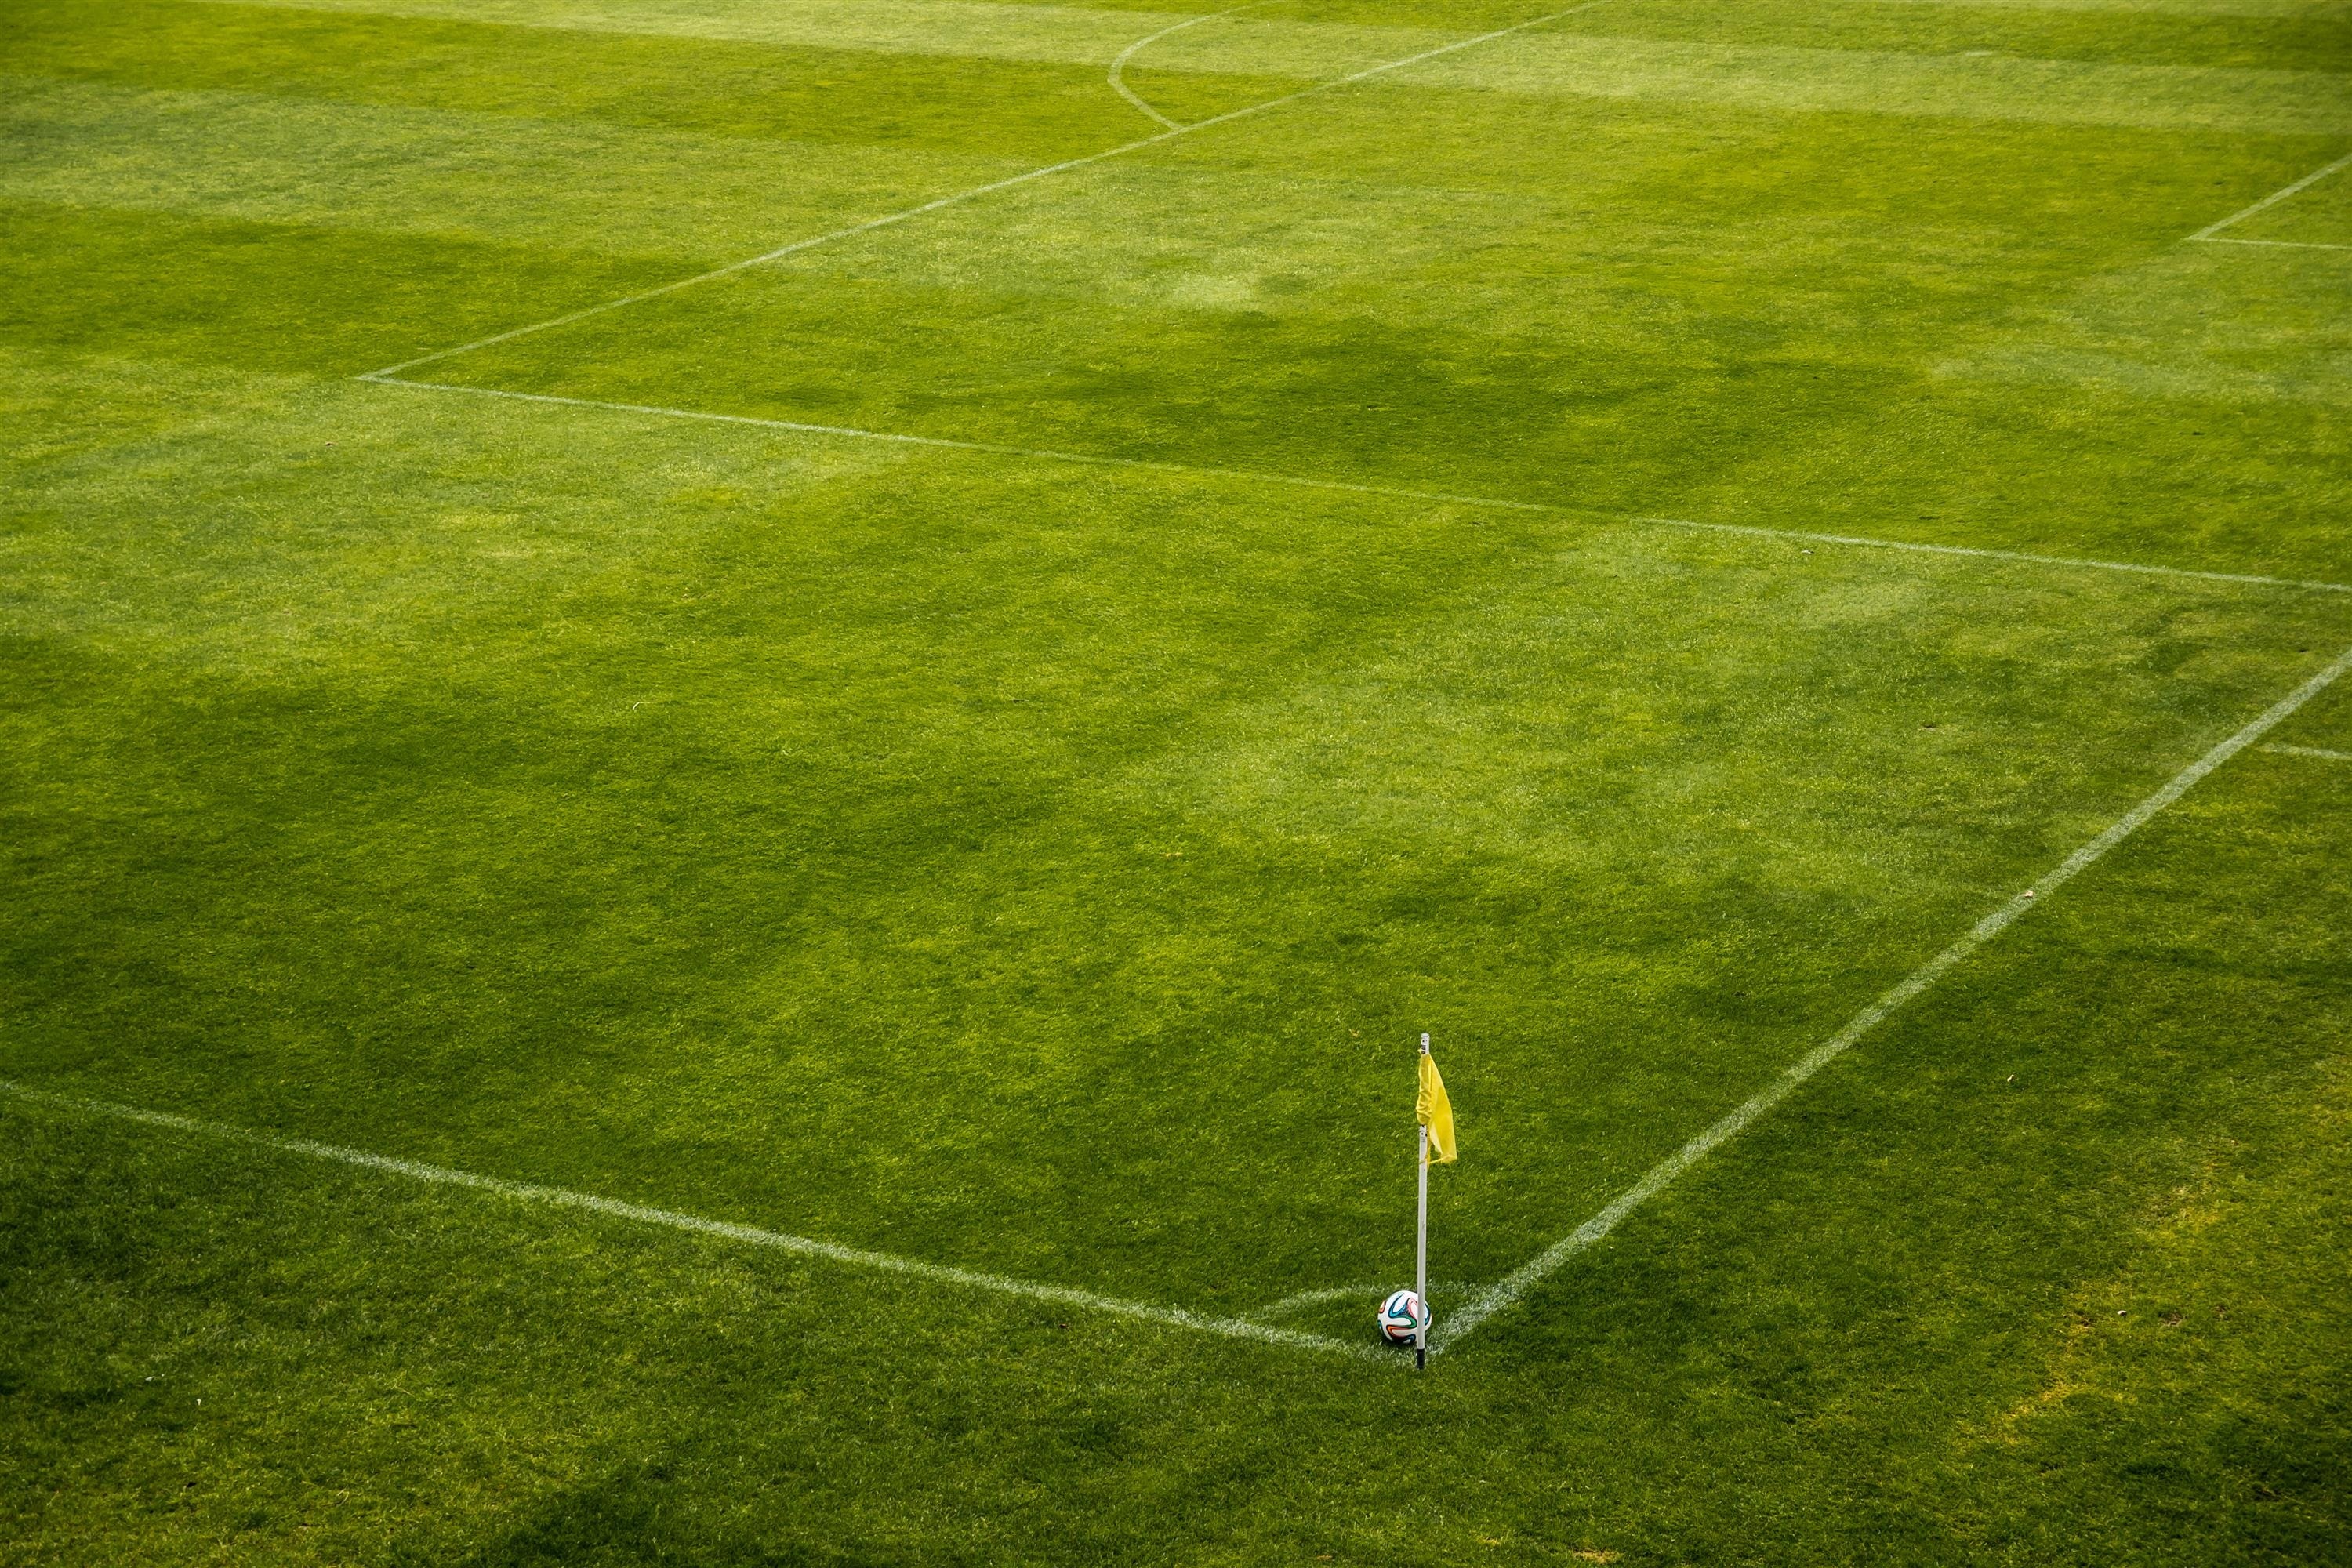 Aparece un el corner de un campo de fútbol con un banderín y una pelota en la esquina